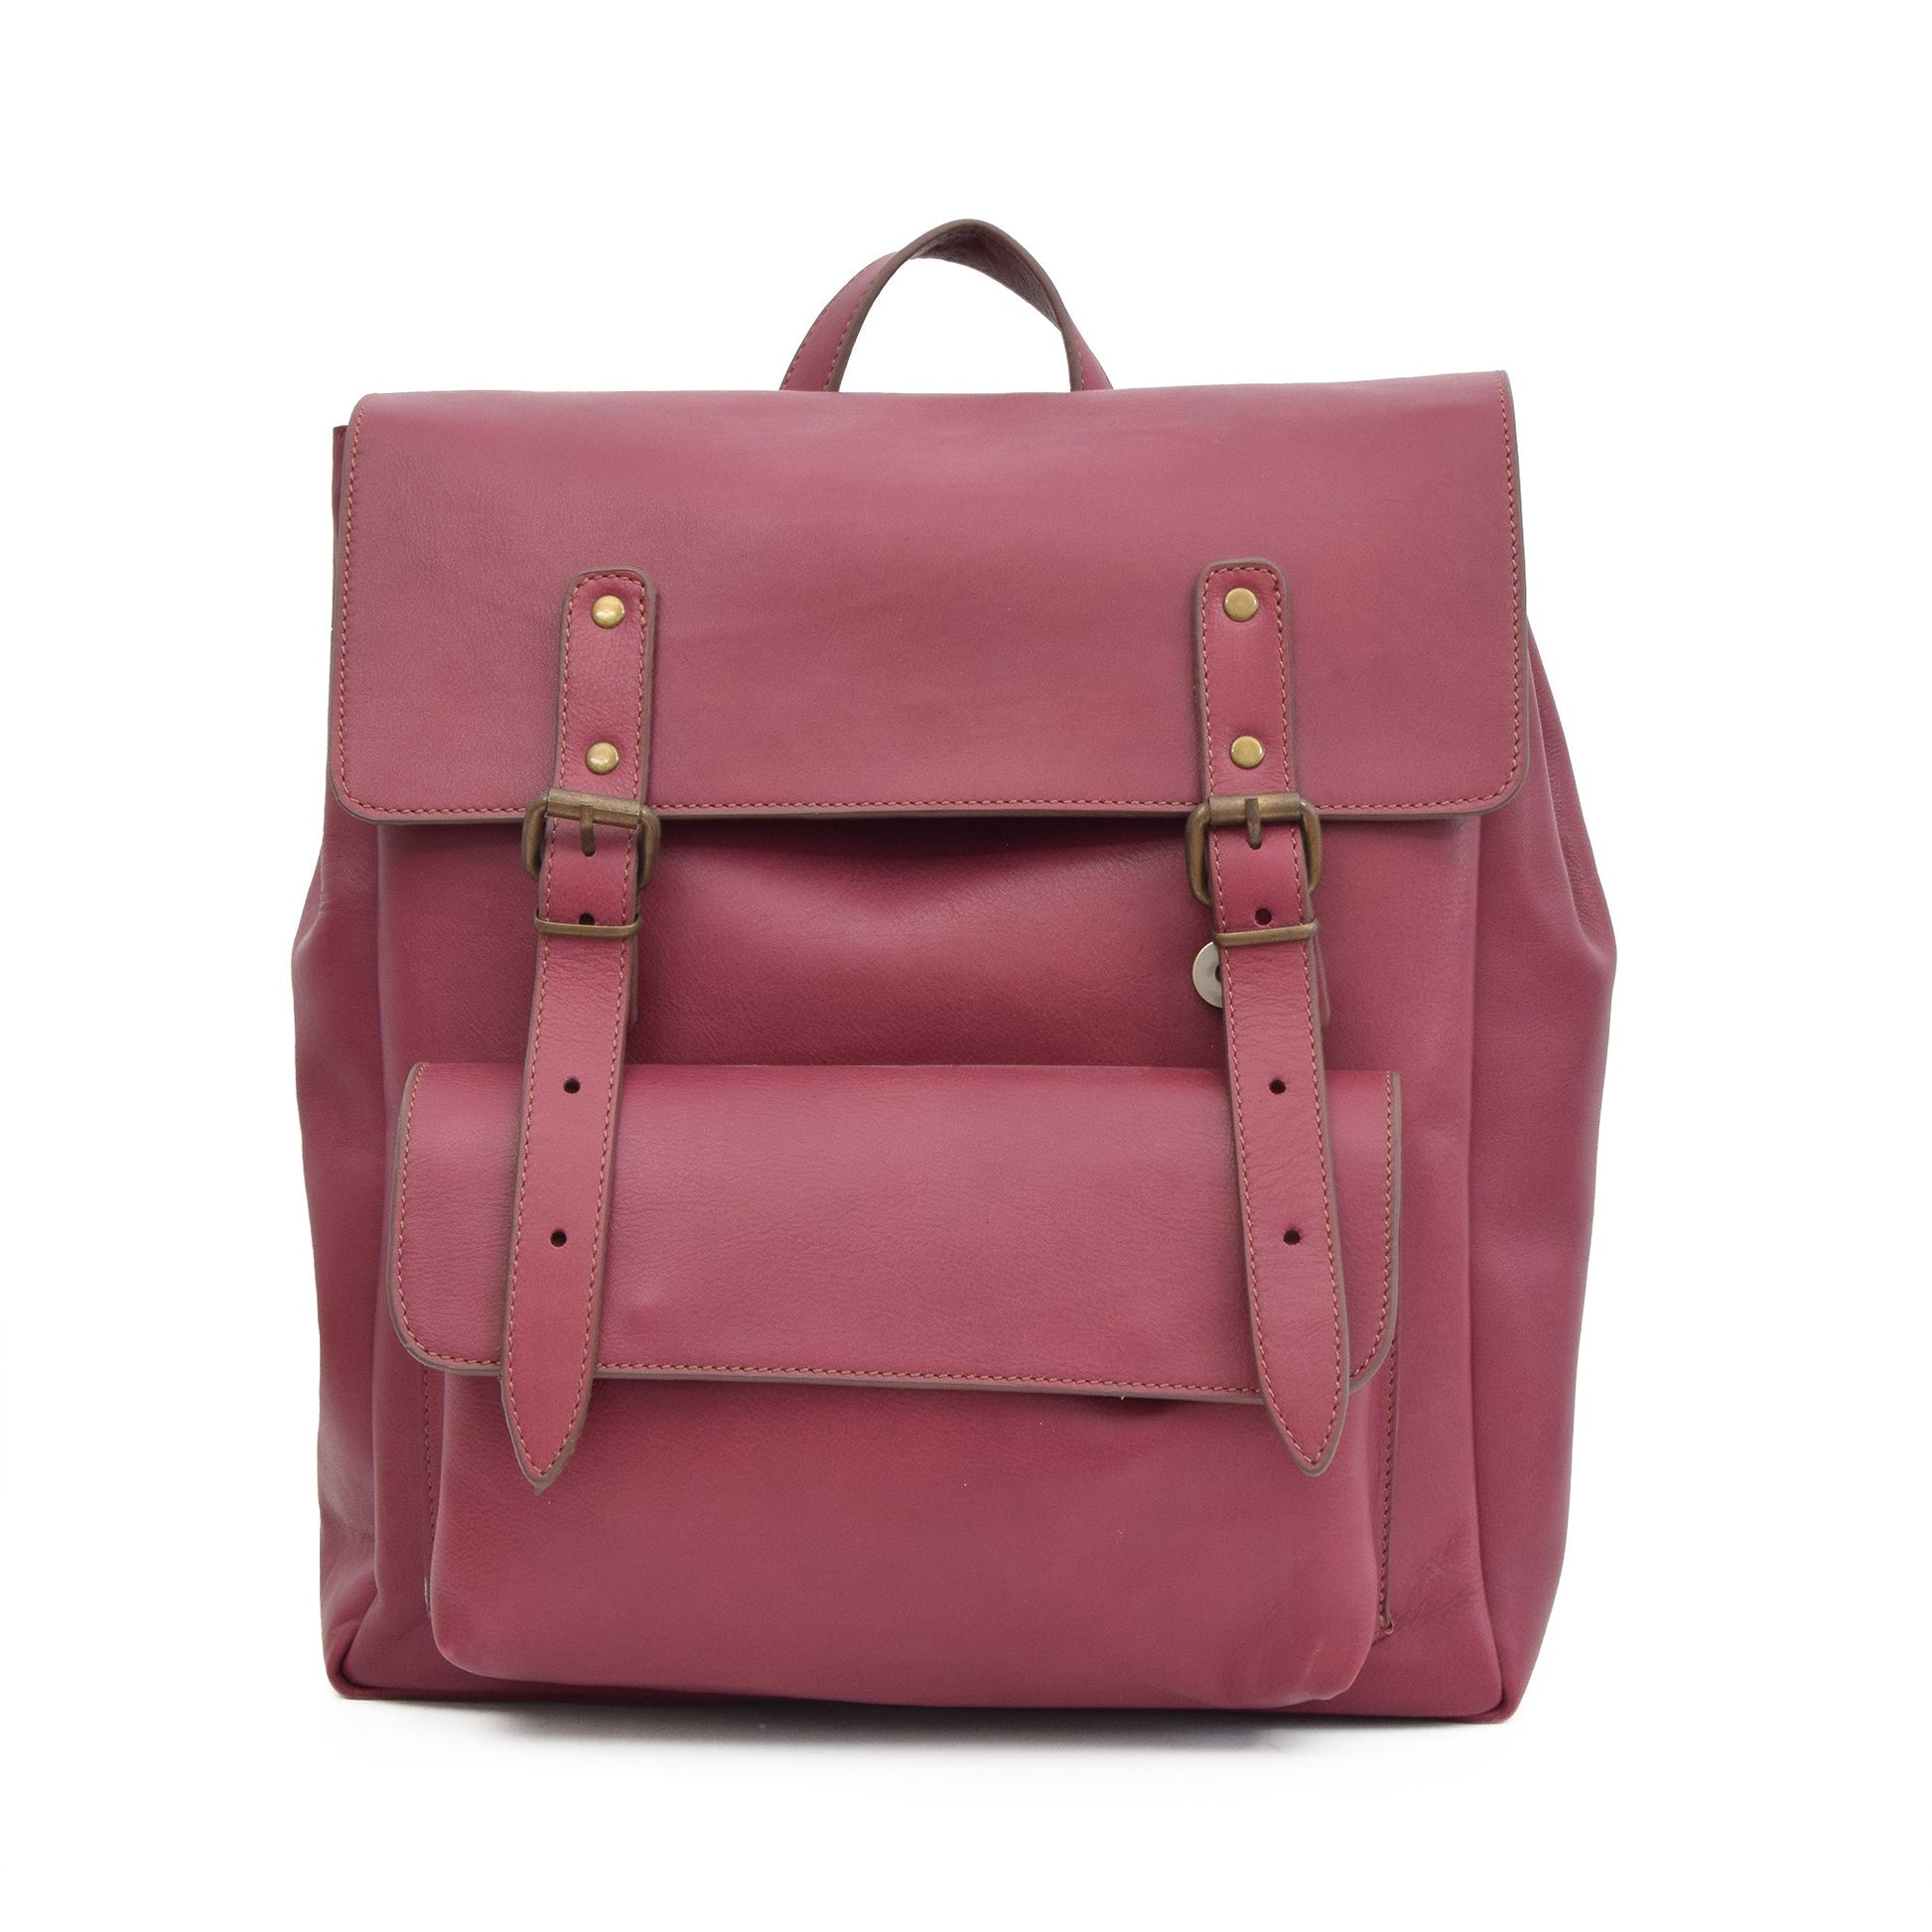 Veloria Leather Backpacks - Burgundy - Zengoda Shop online from Artisan Brands